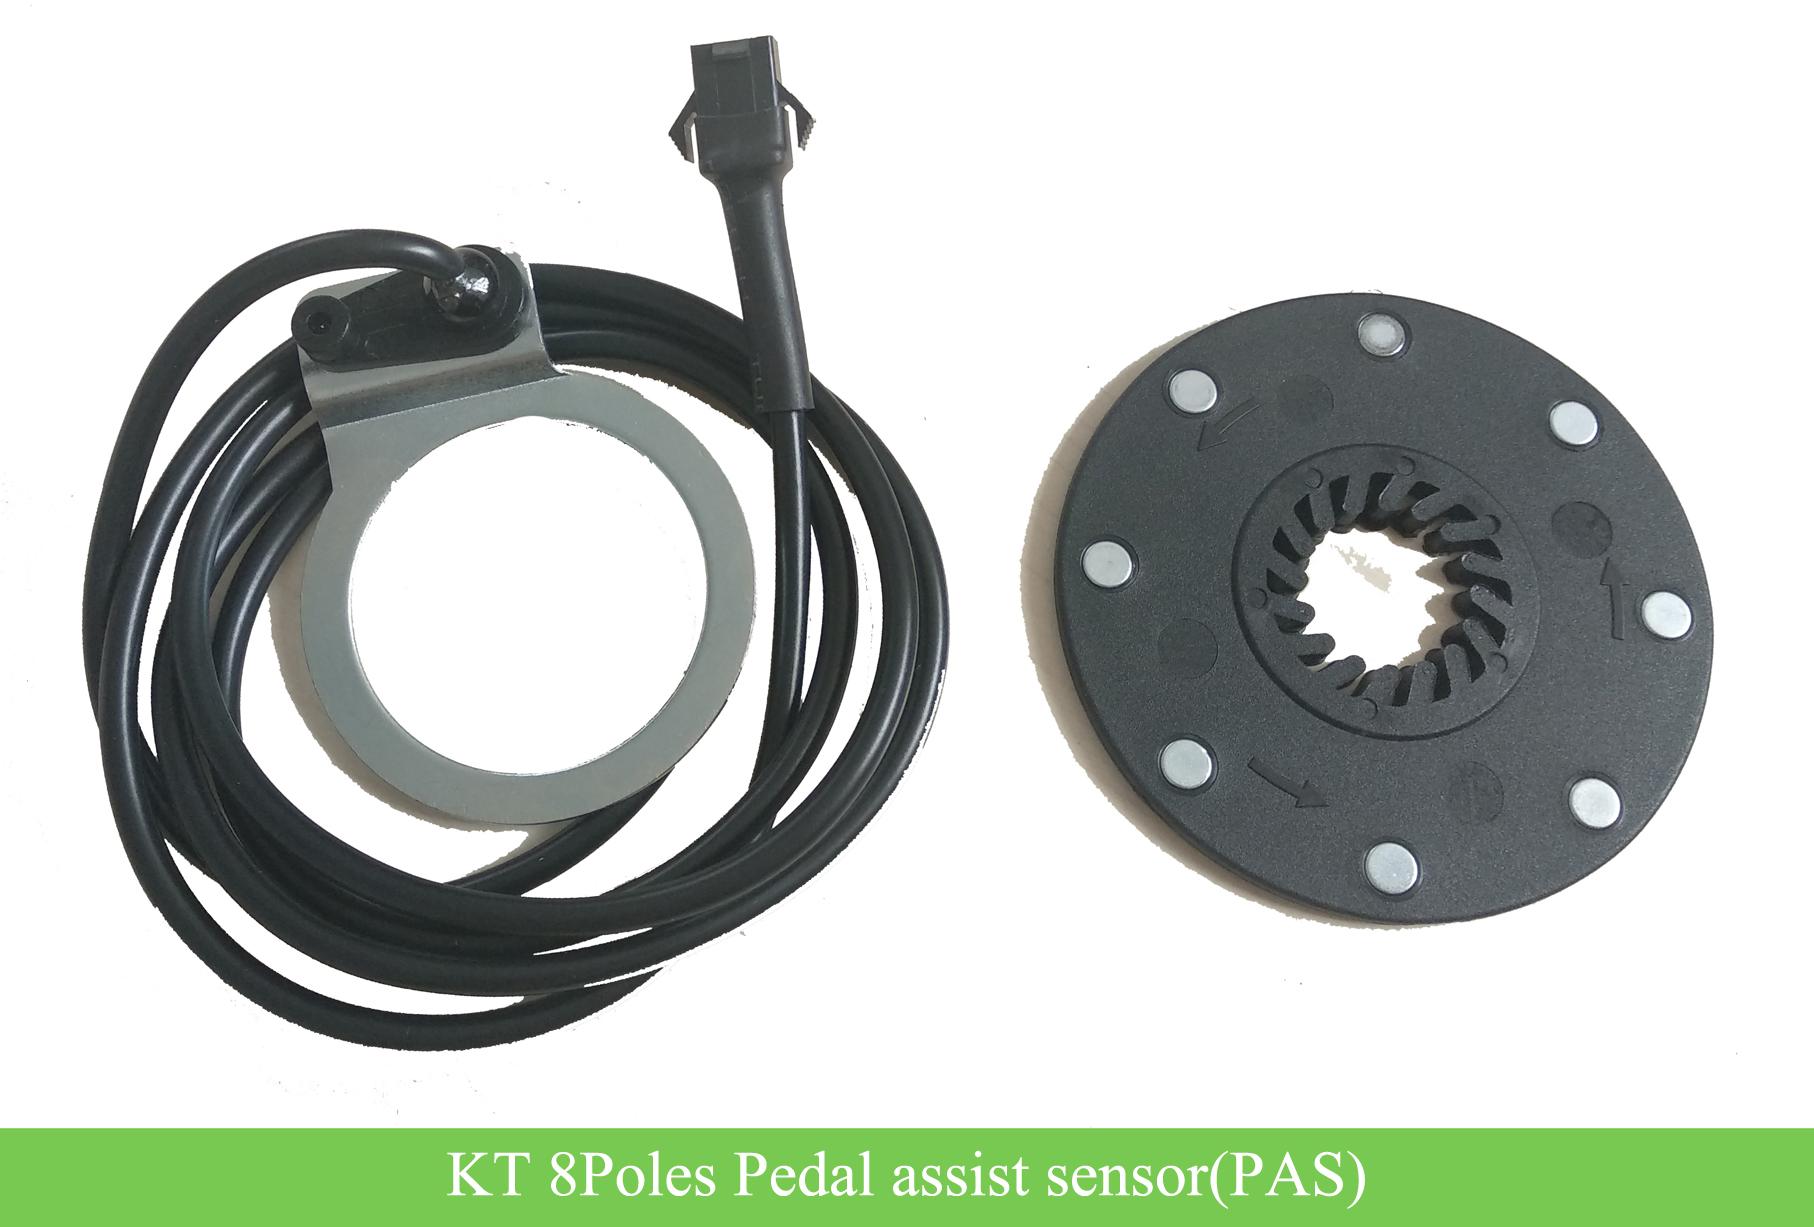 https://www.greenbikekit.com/media/catalog/product/e/-/e-bike-kt-8poles-pedal-assist-sensor-pas_3.jpg